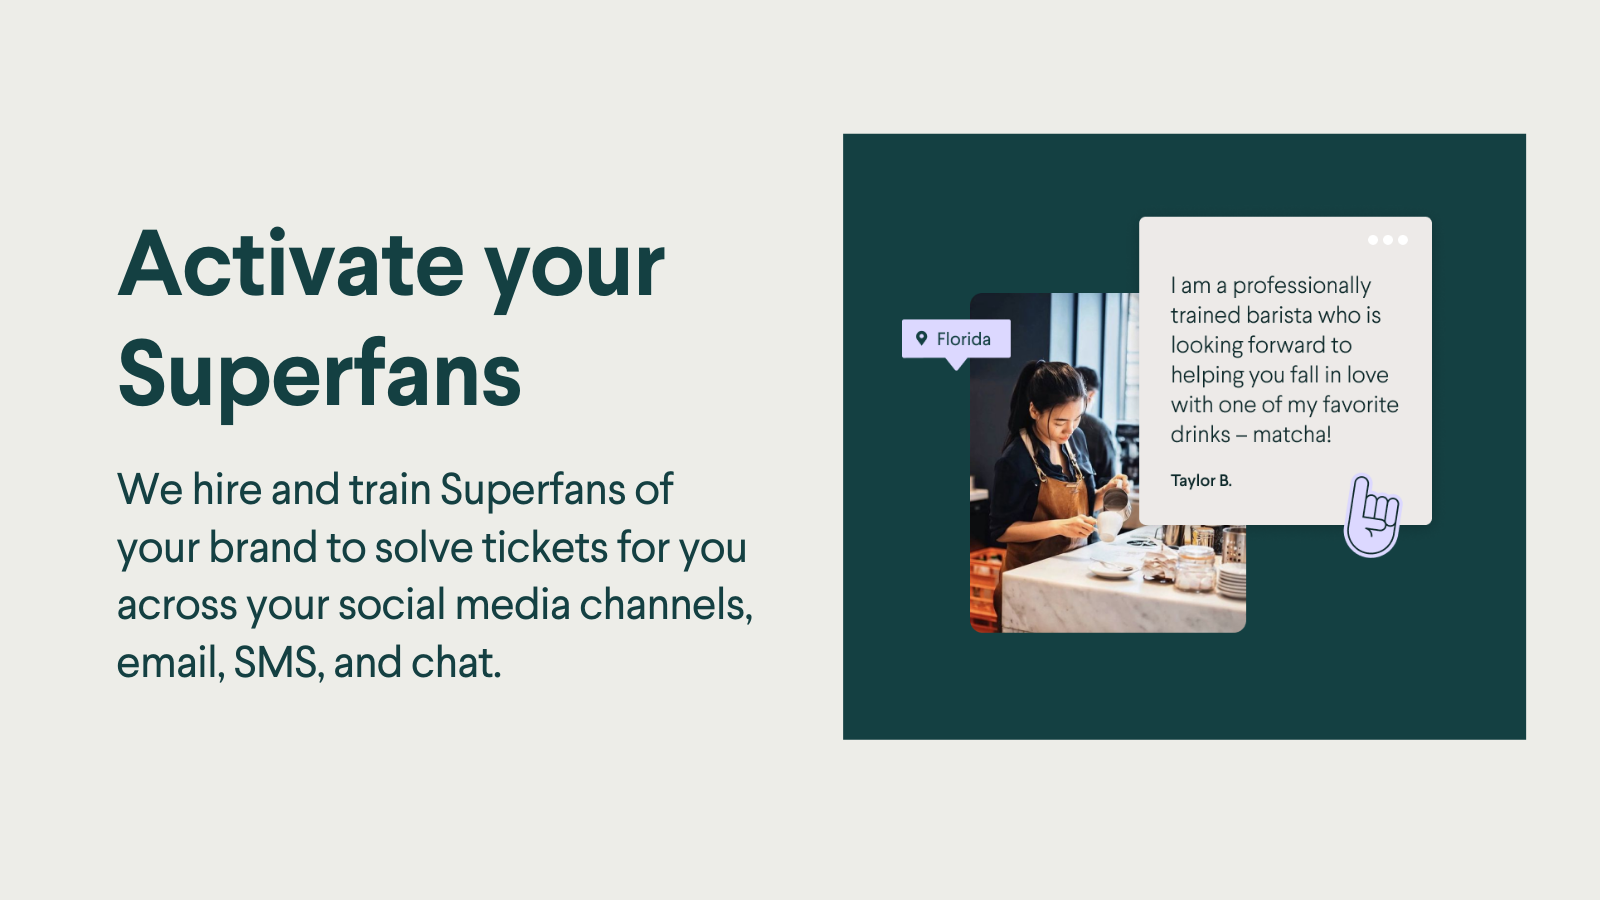 We trainen Superfans van uw merk om tickets voor u op te lossen